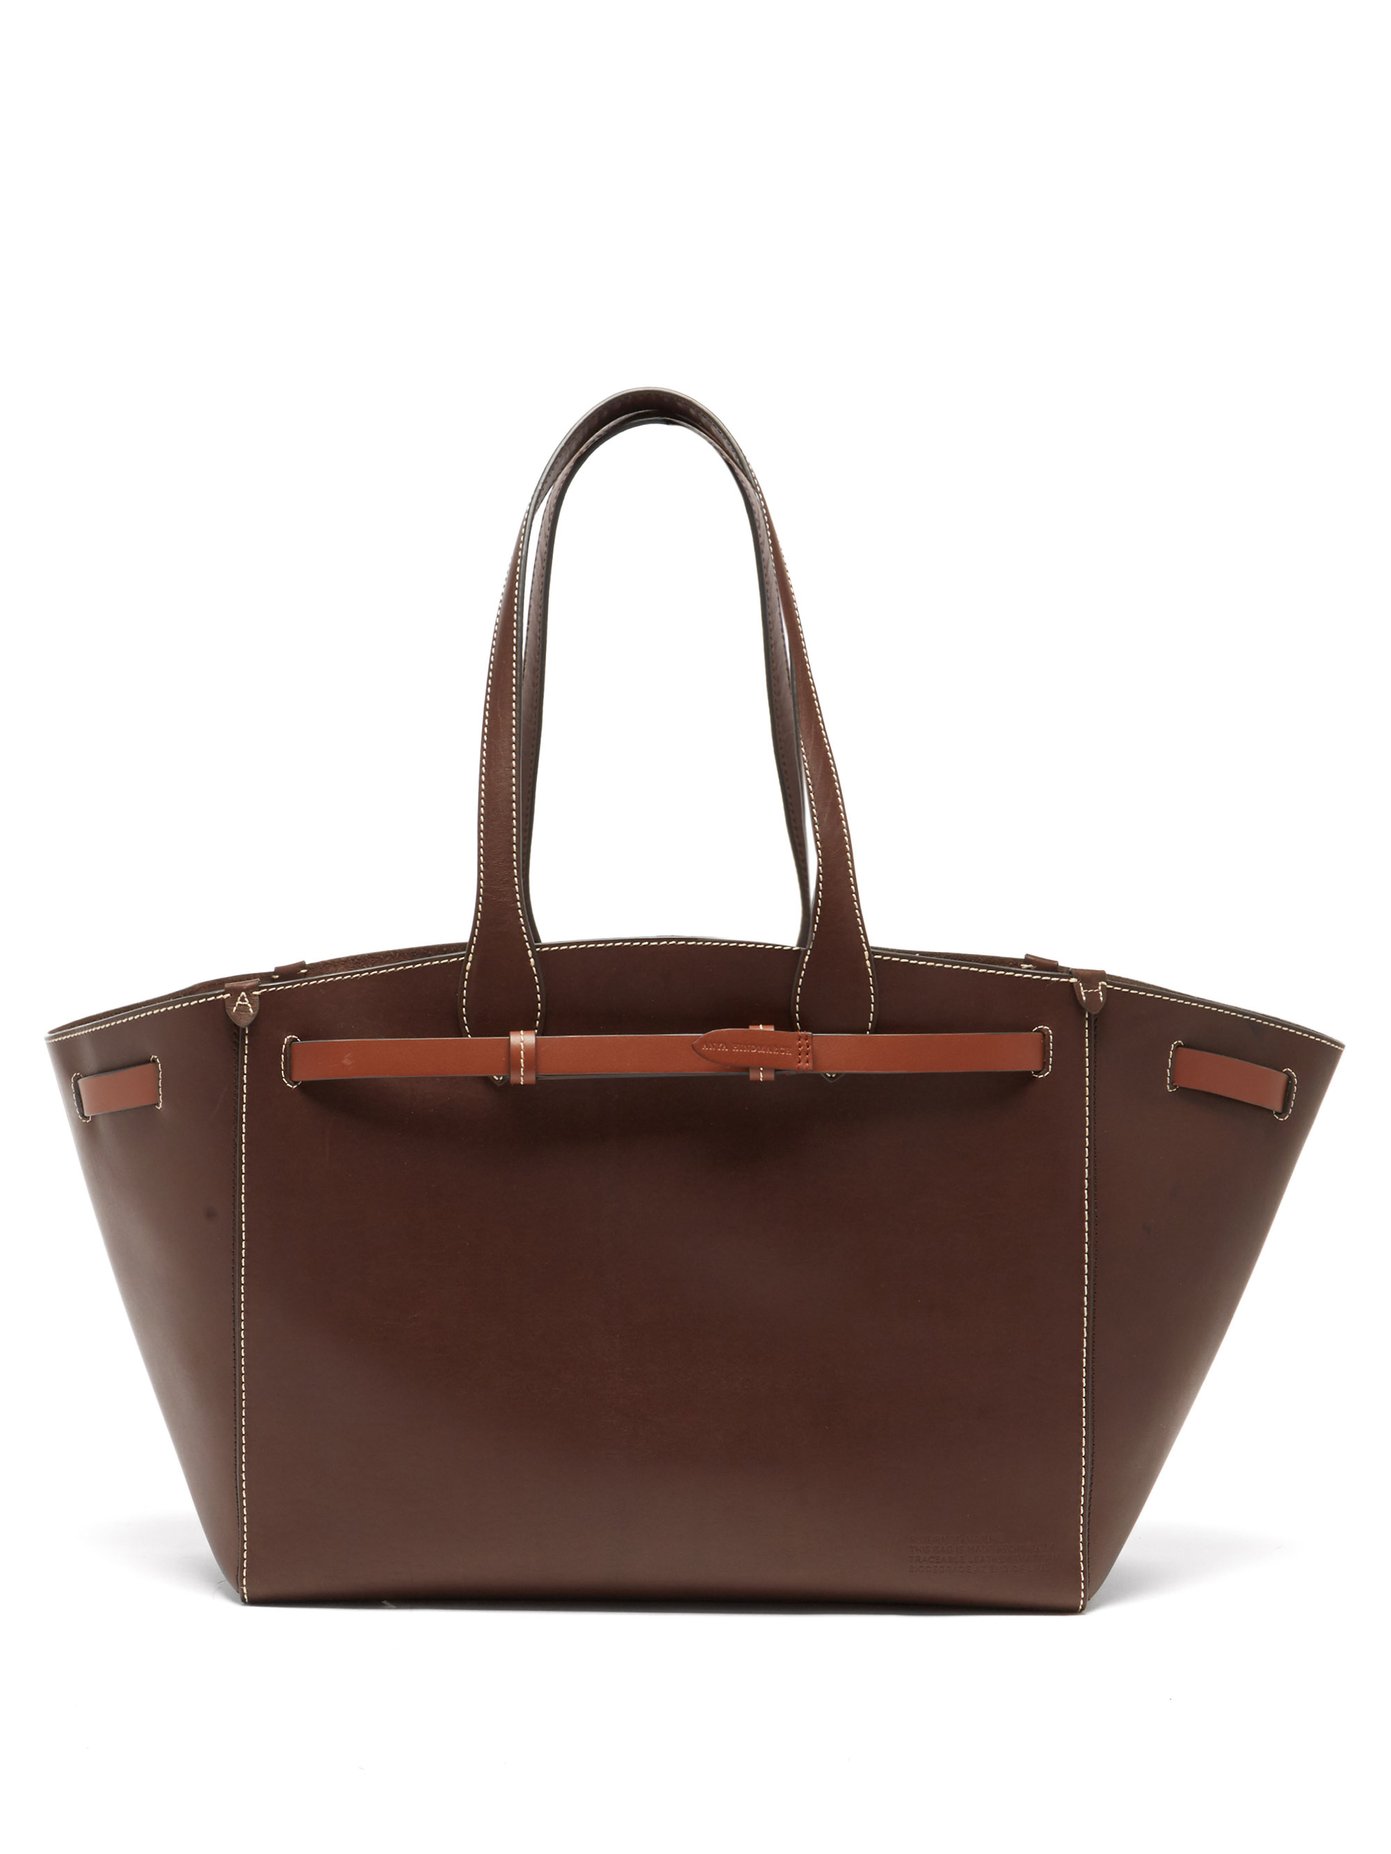 안야 힌드마치 토트백 Anya Hindmarch Brown Return to Nature leather tote bag